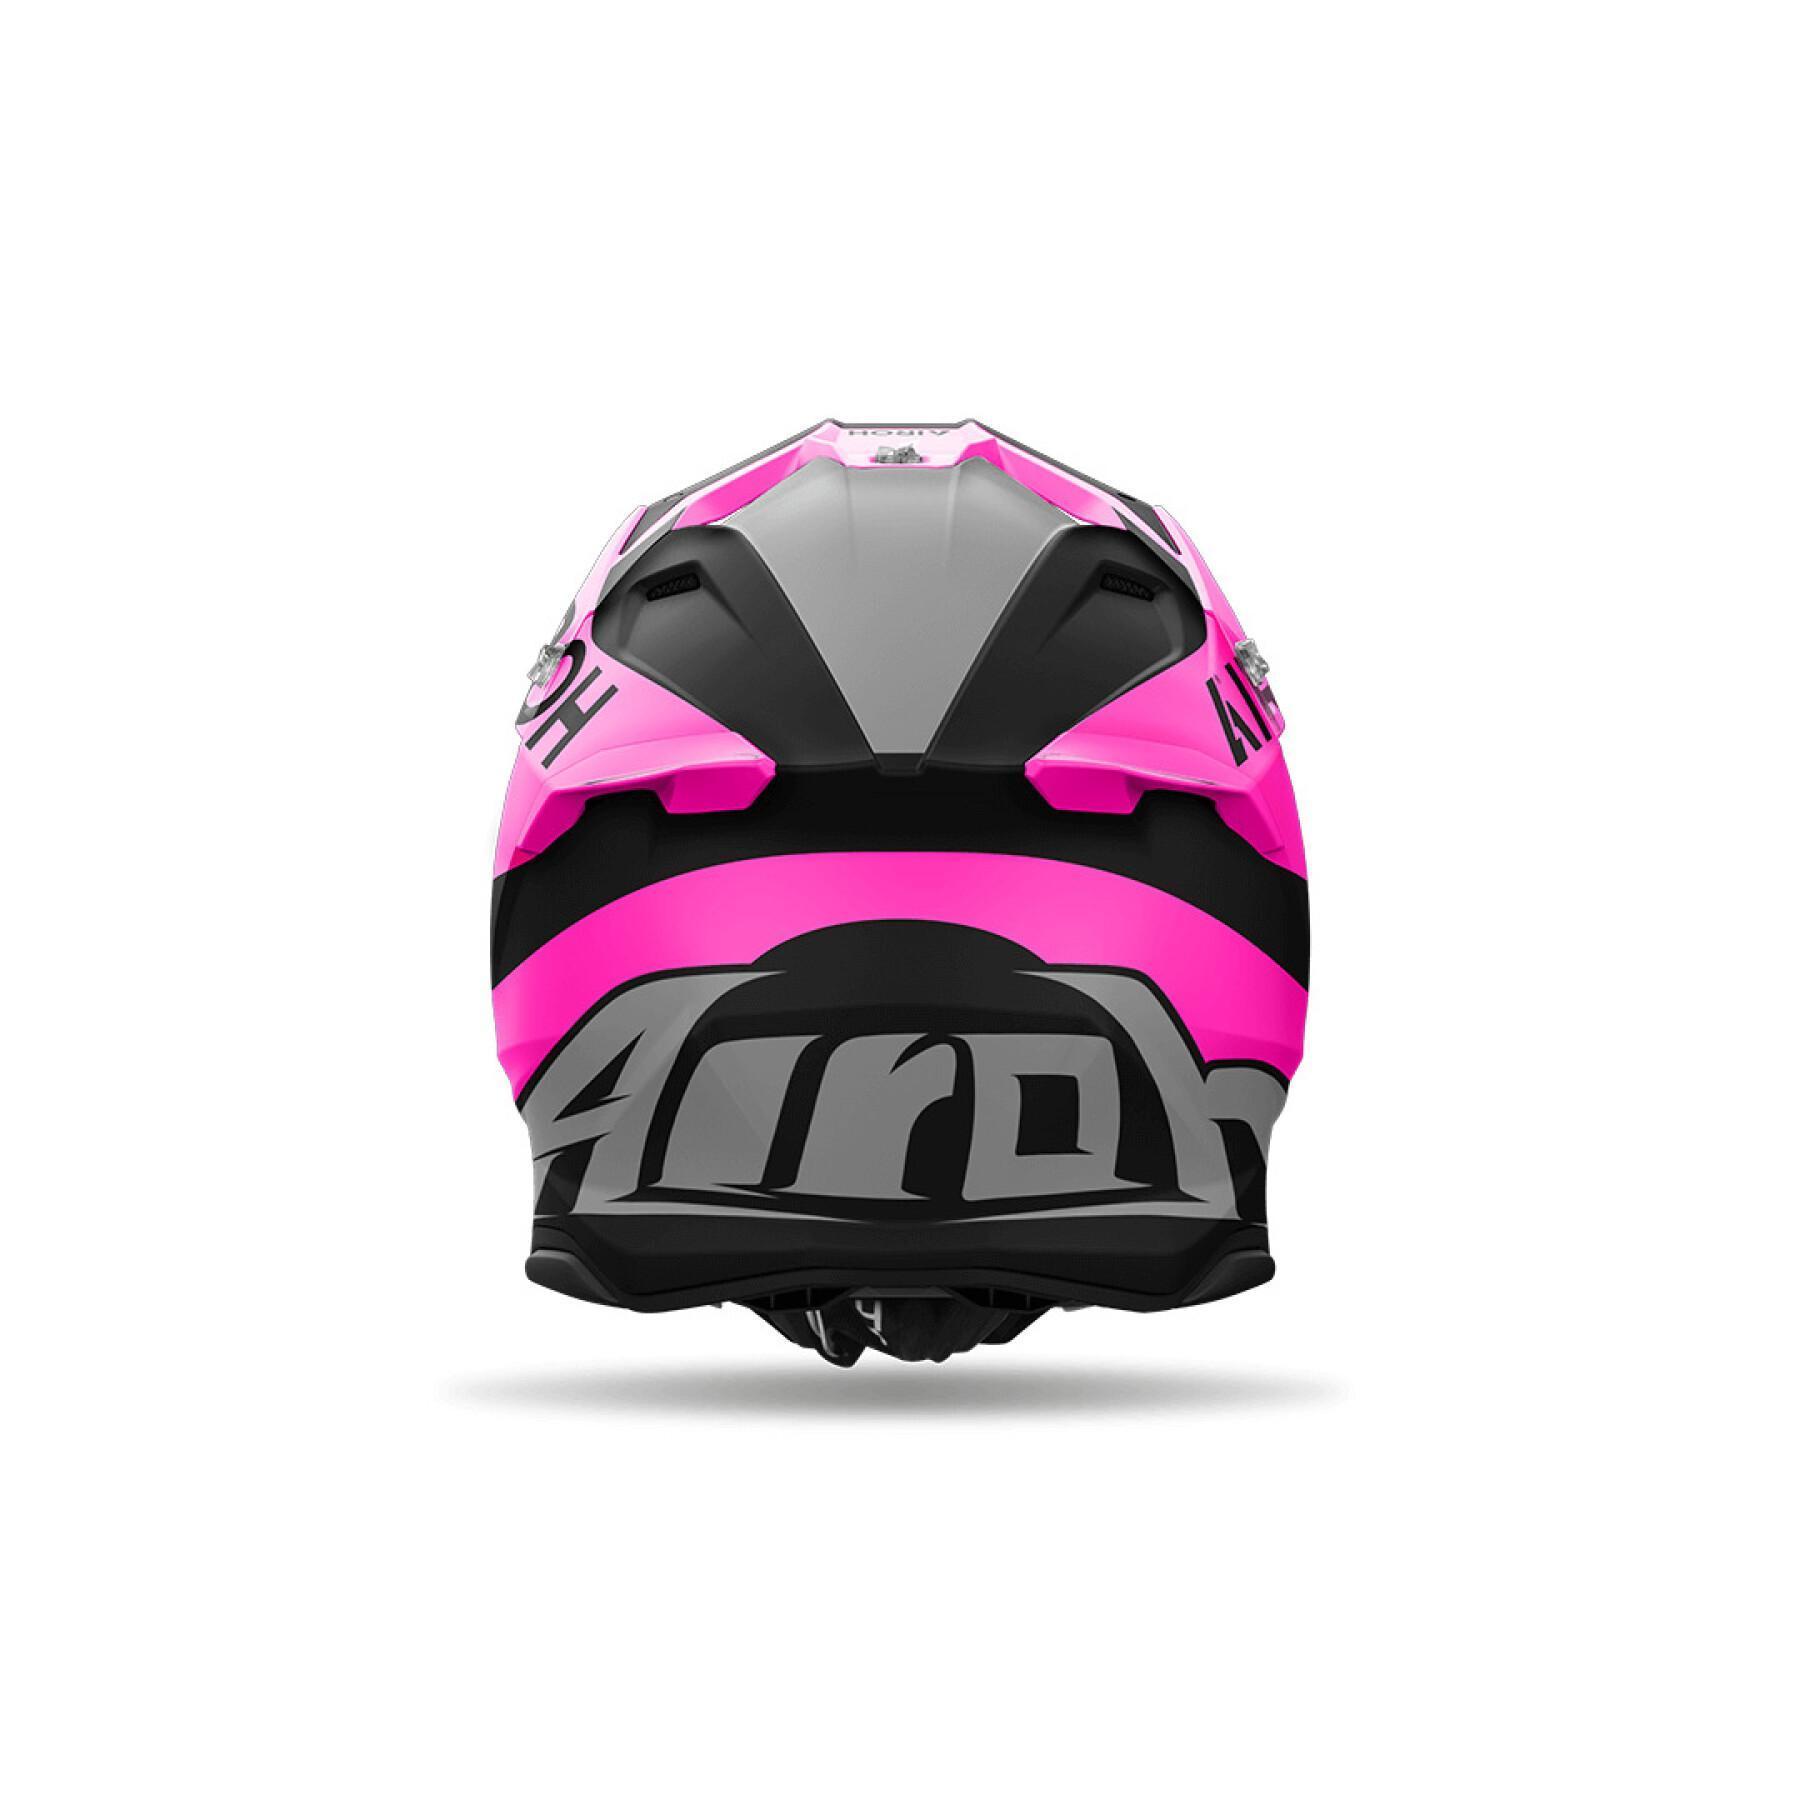 Motorcycle helmet Airoh Twist 3 King